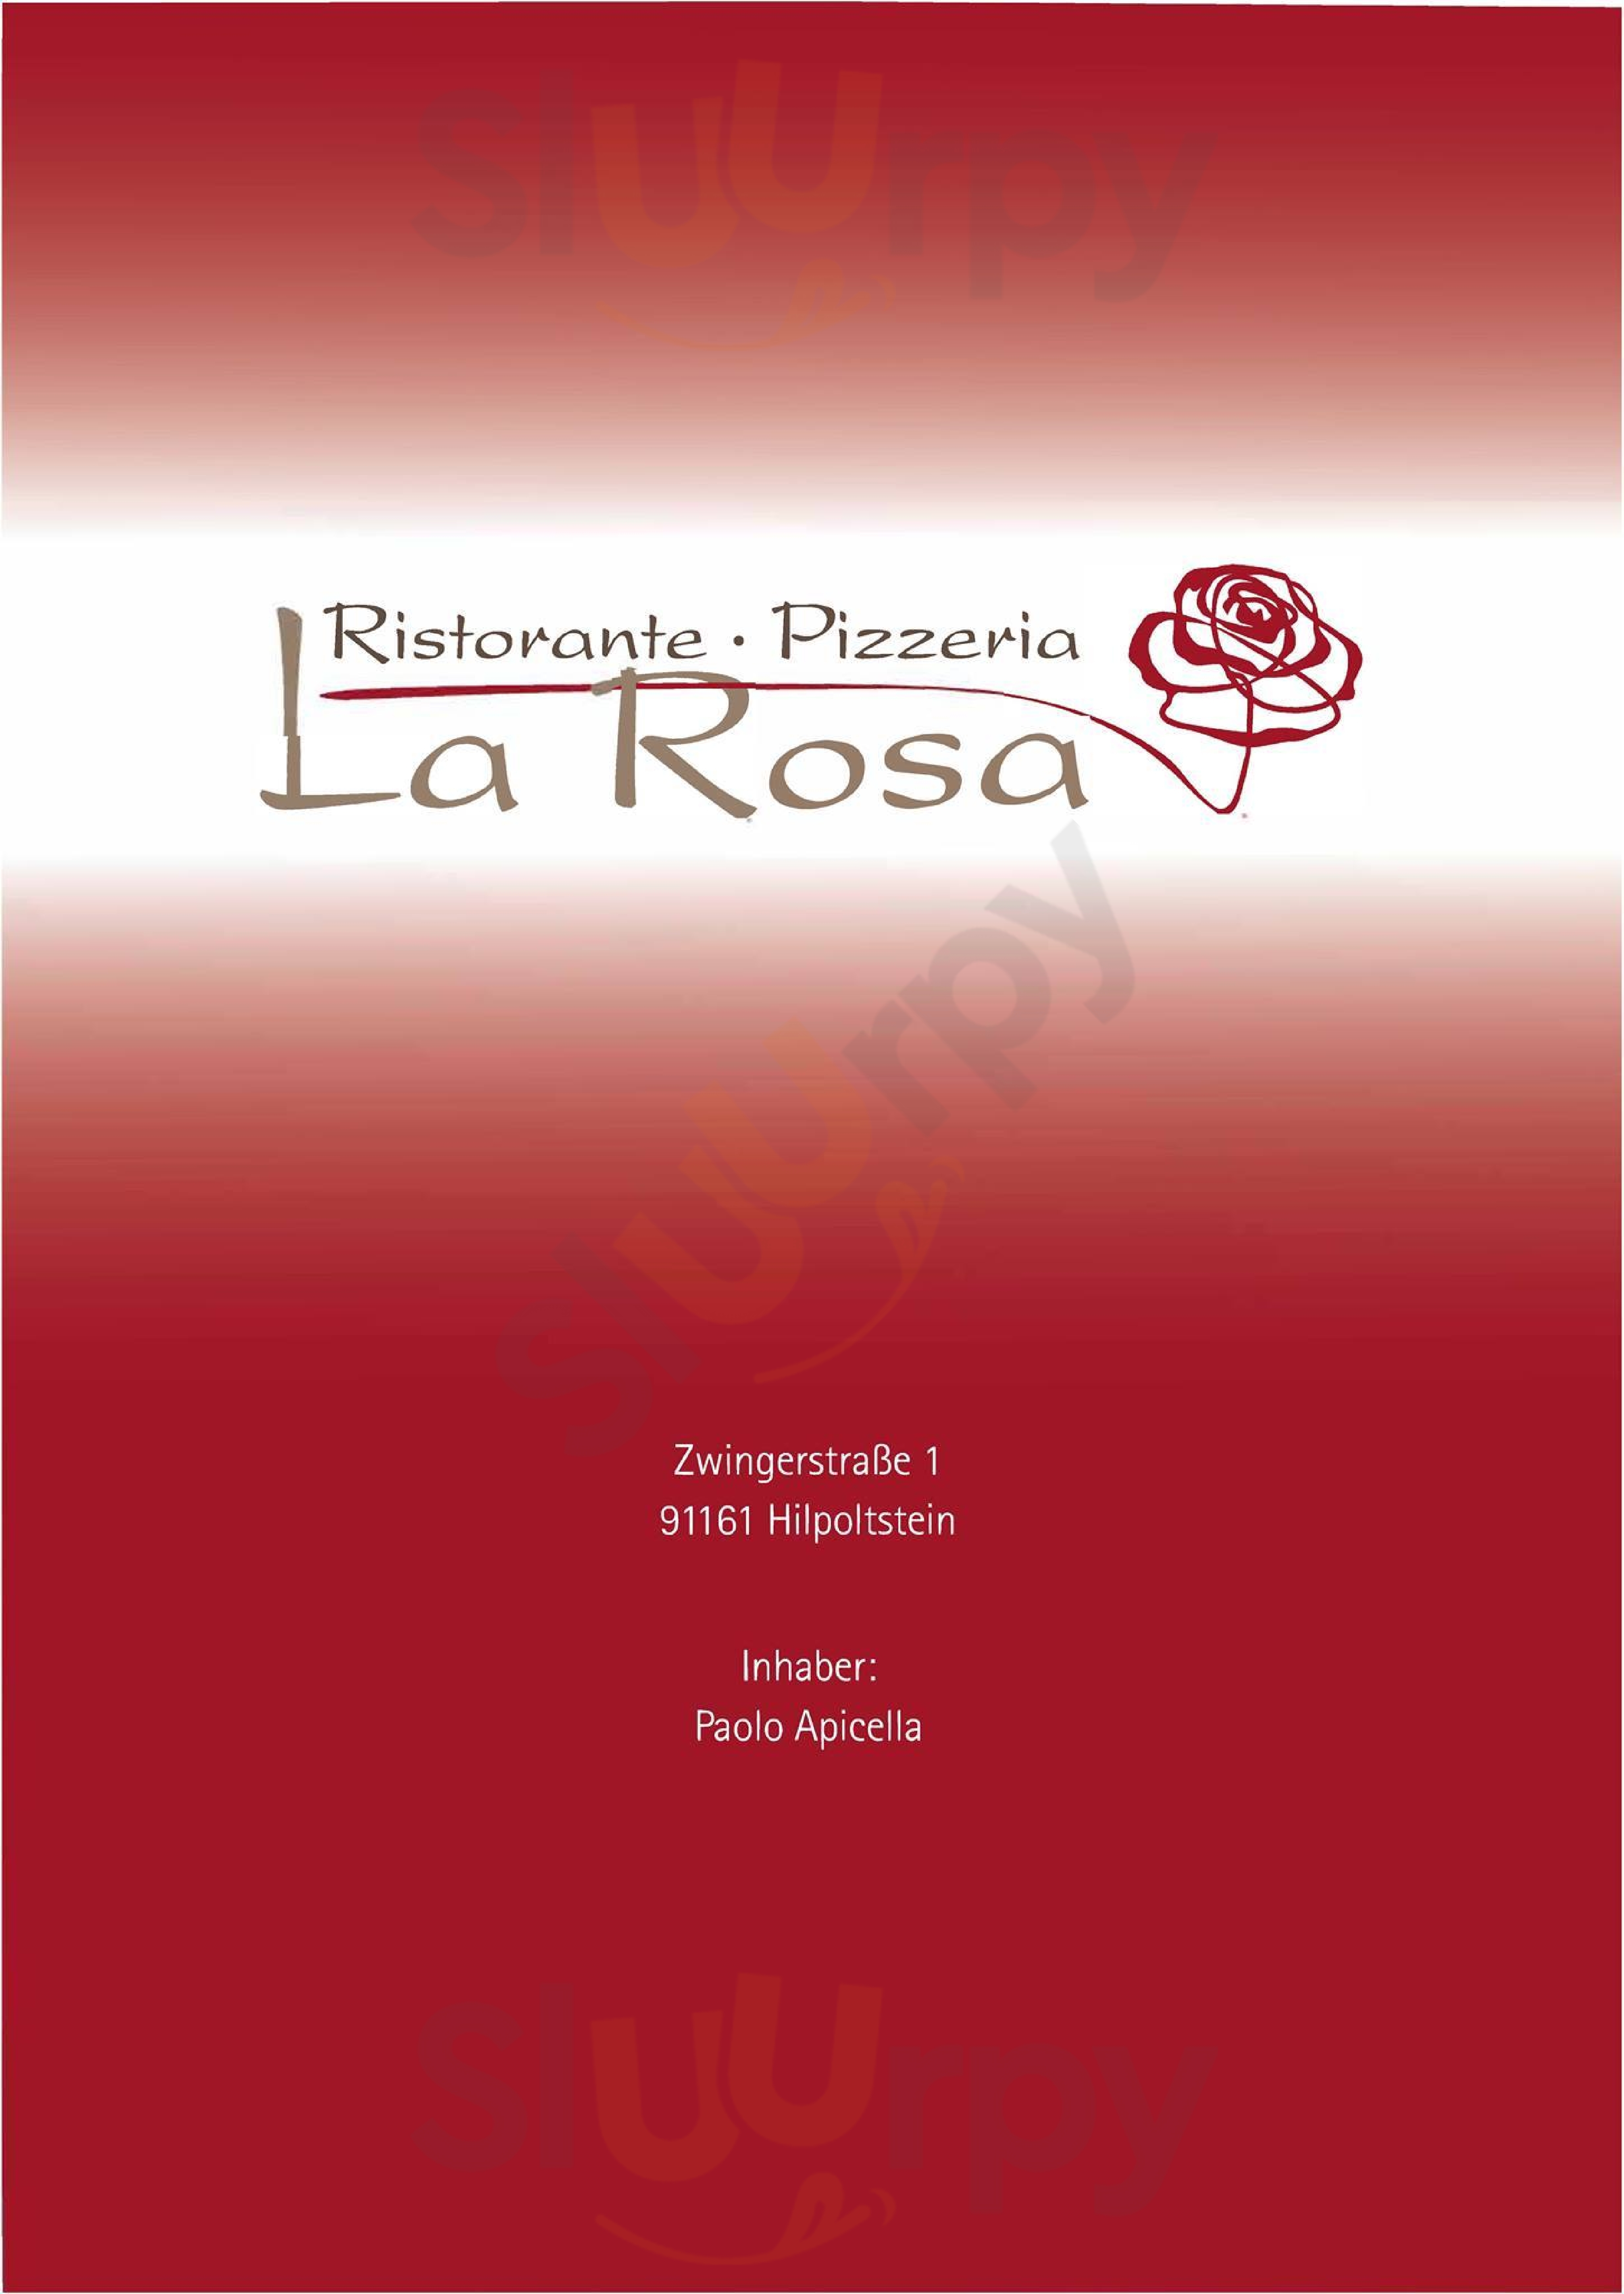 Ristorante Pizzeria La Rosa Hilpoltstein Menu - 1